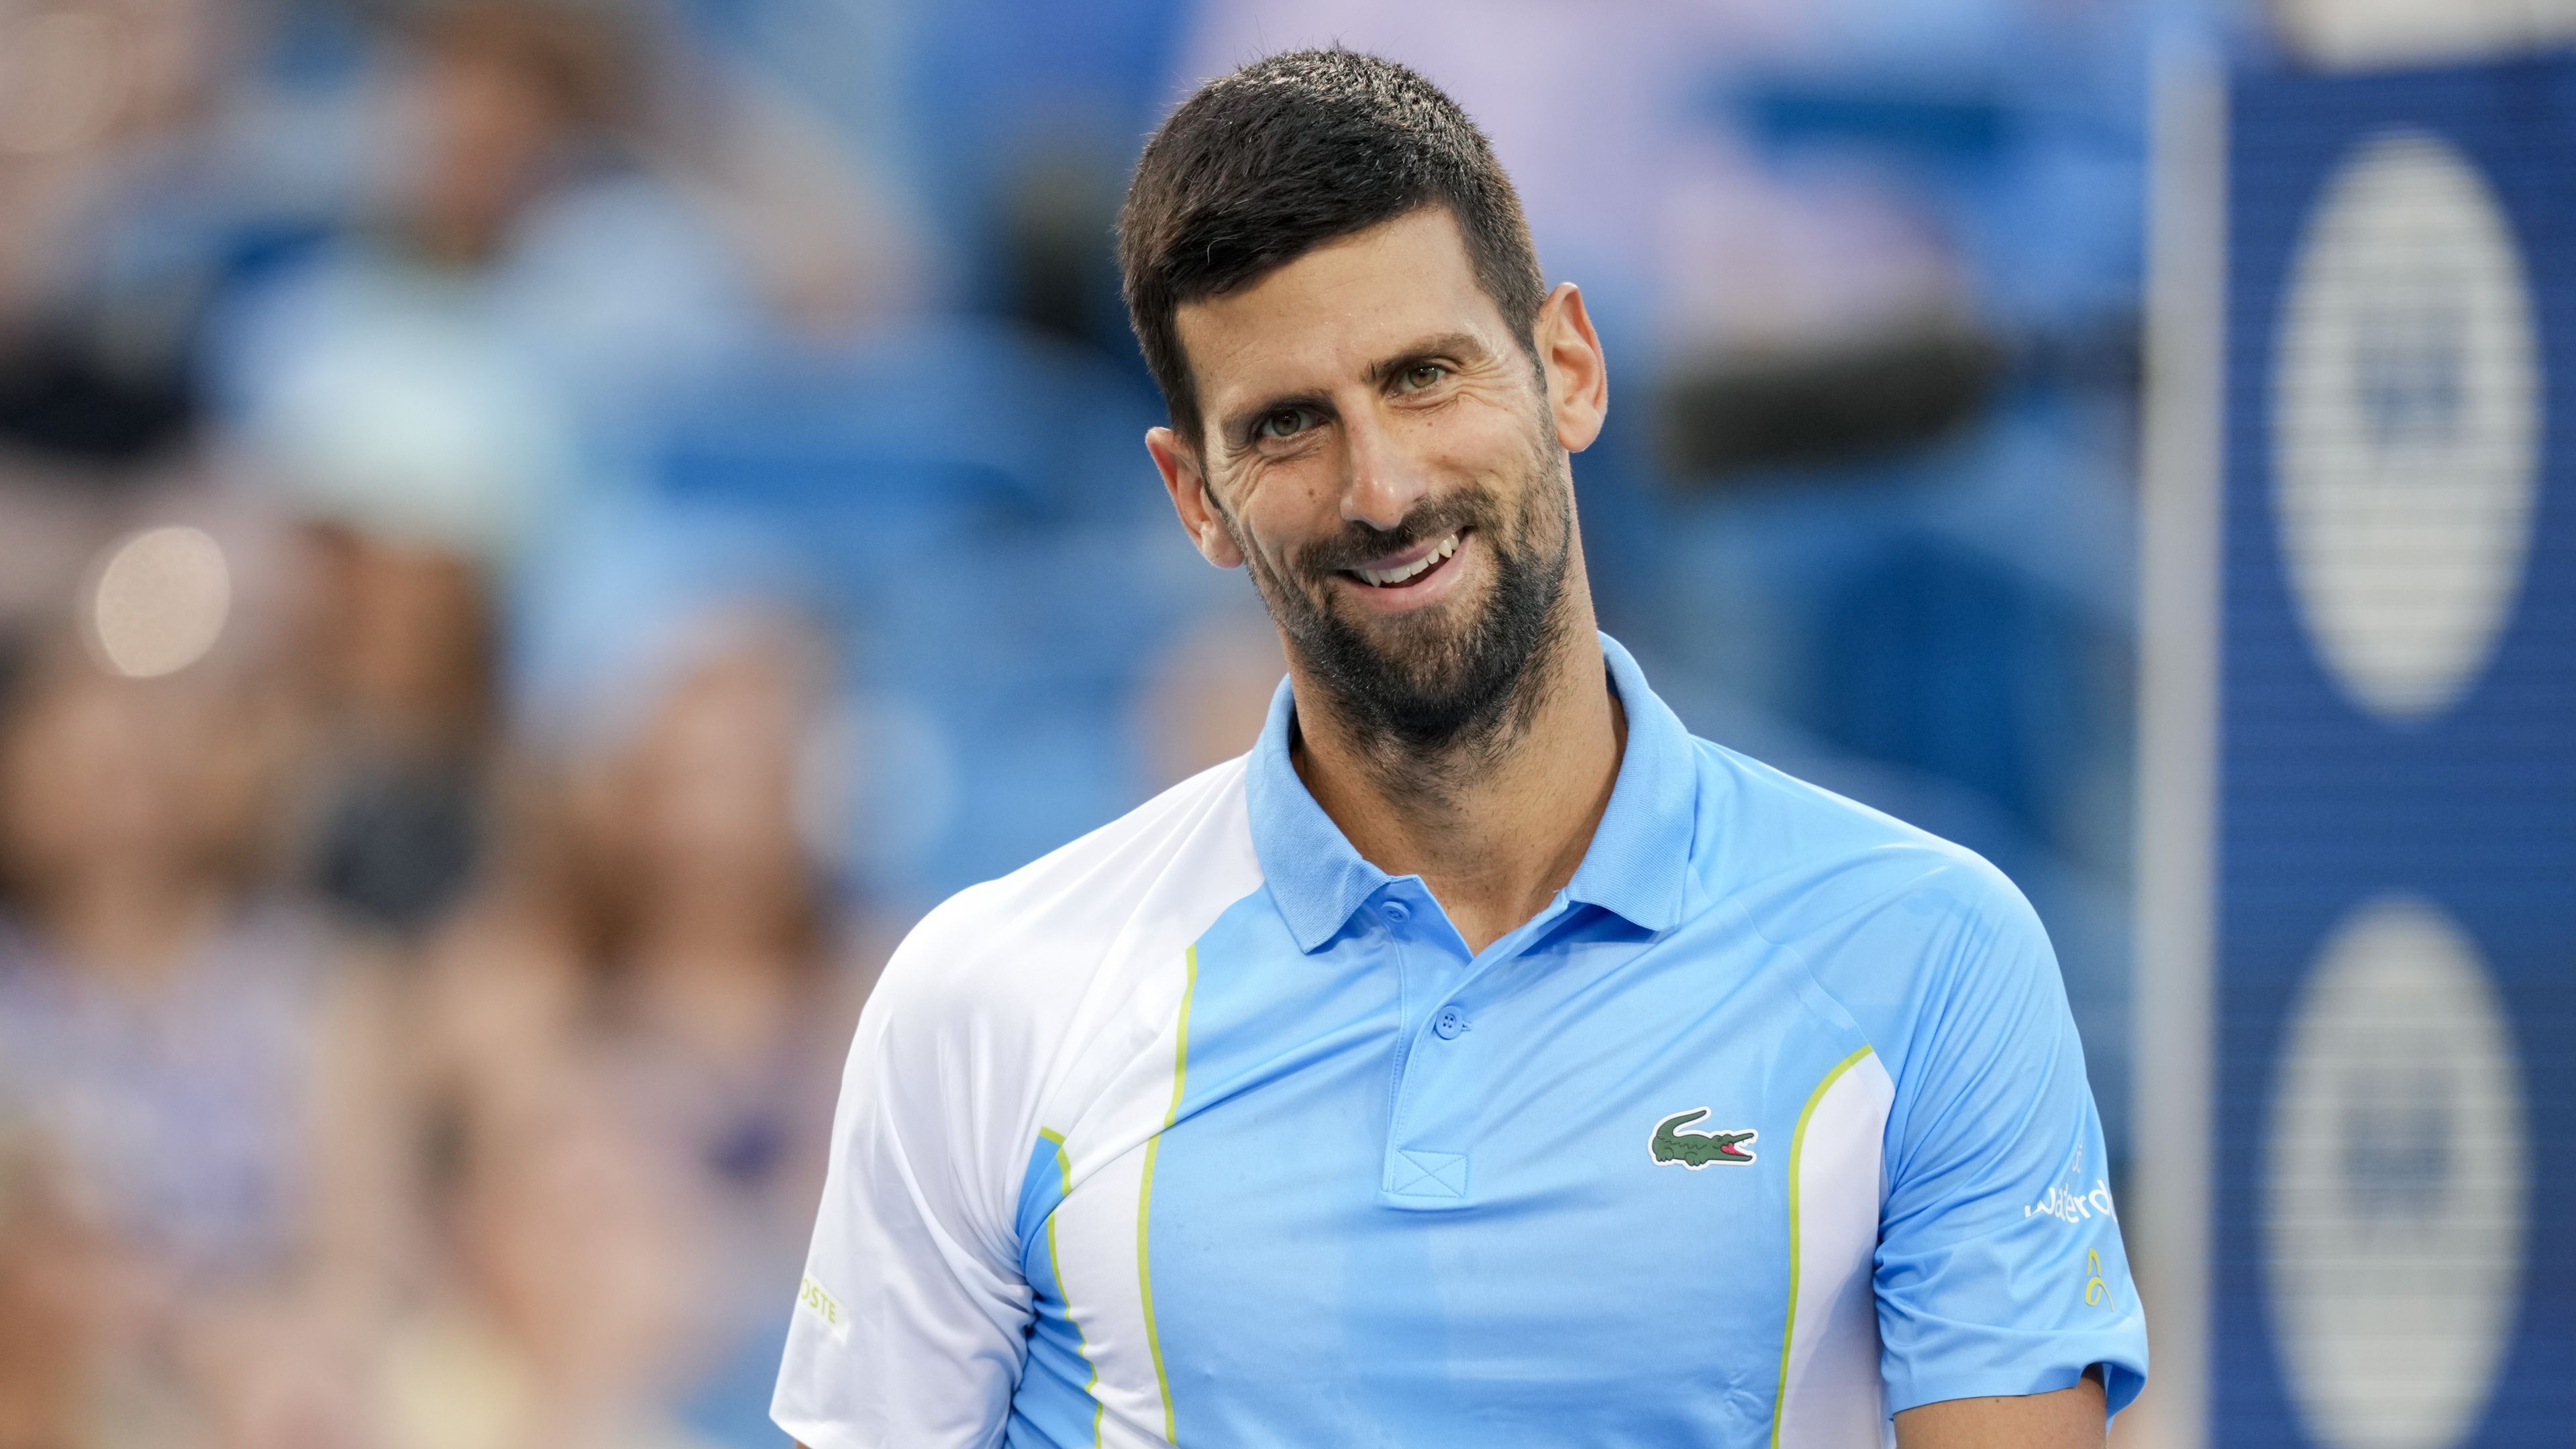 Djokovics a 2021-es US Open elvesztett döntője óta nem szerepelt Amerikában